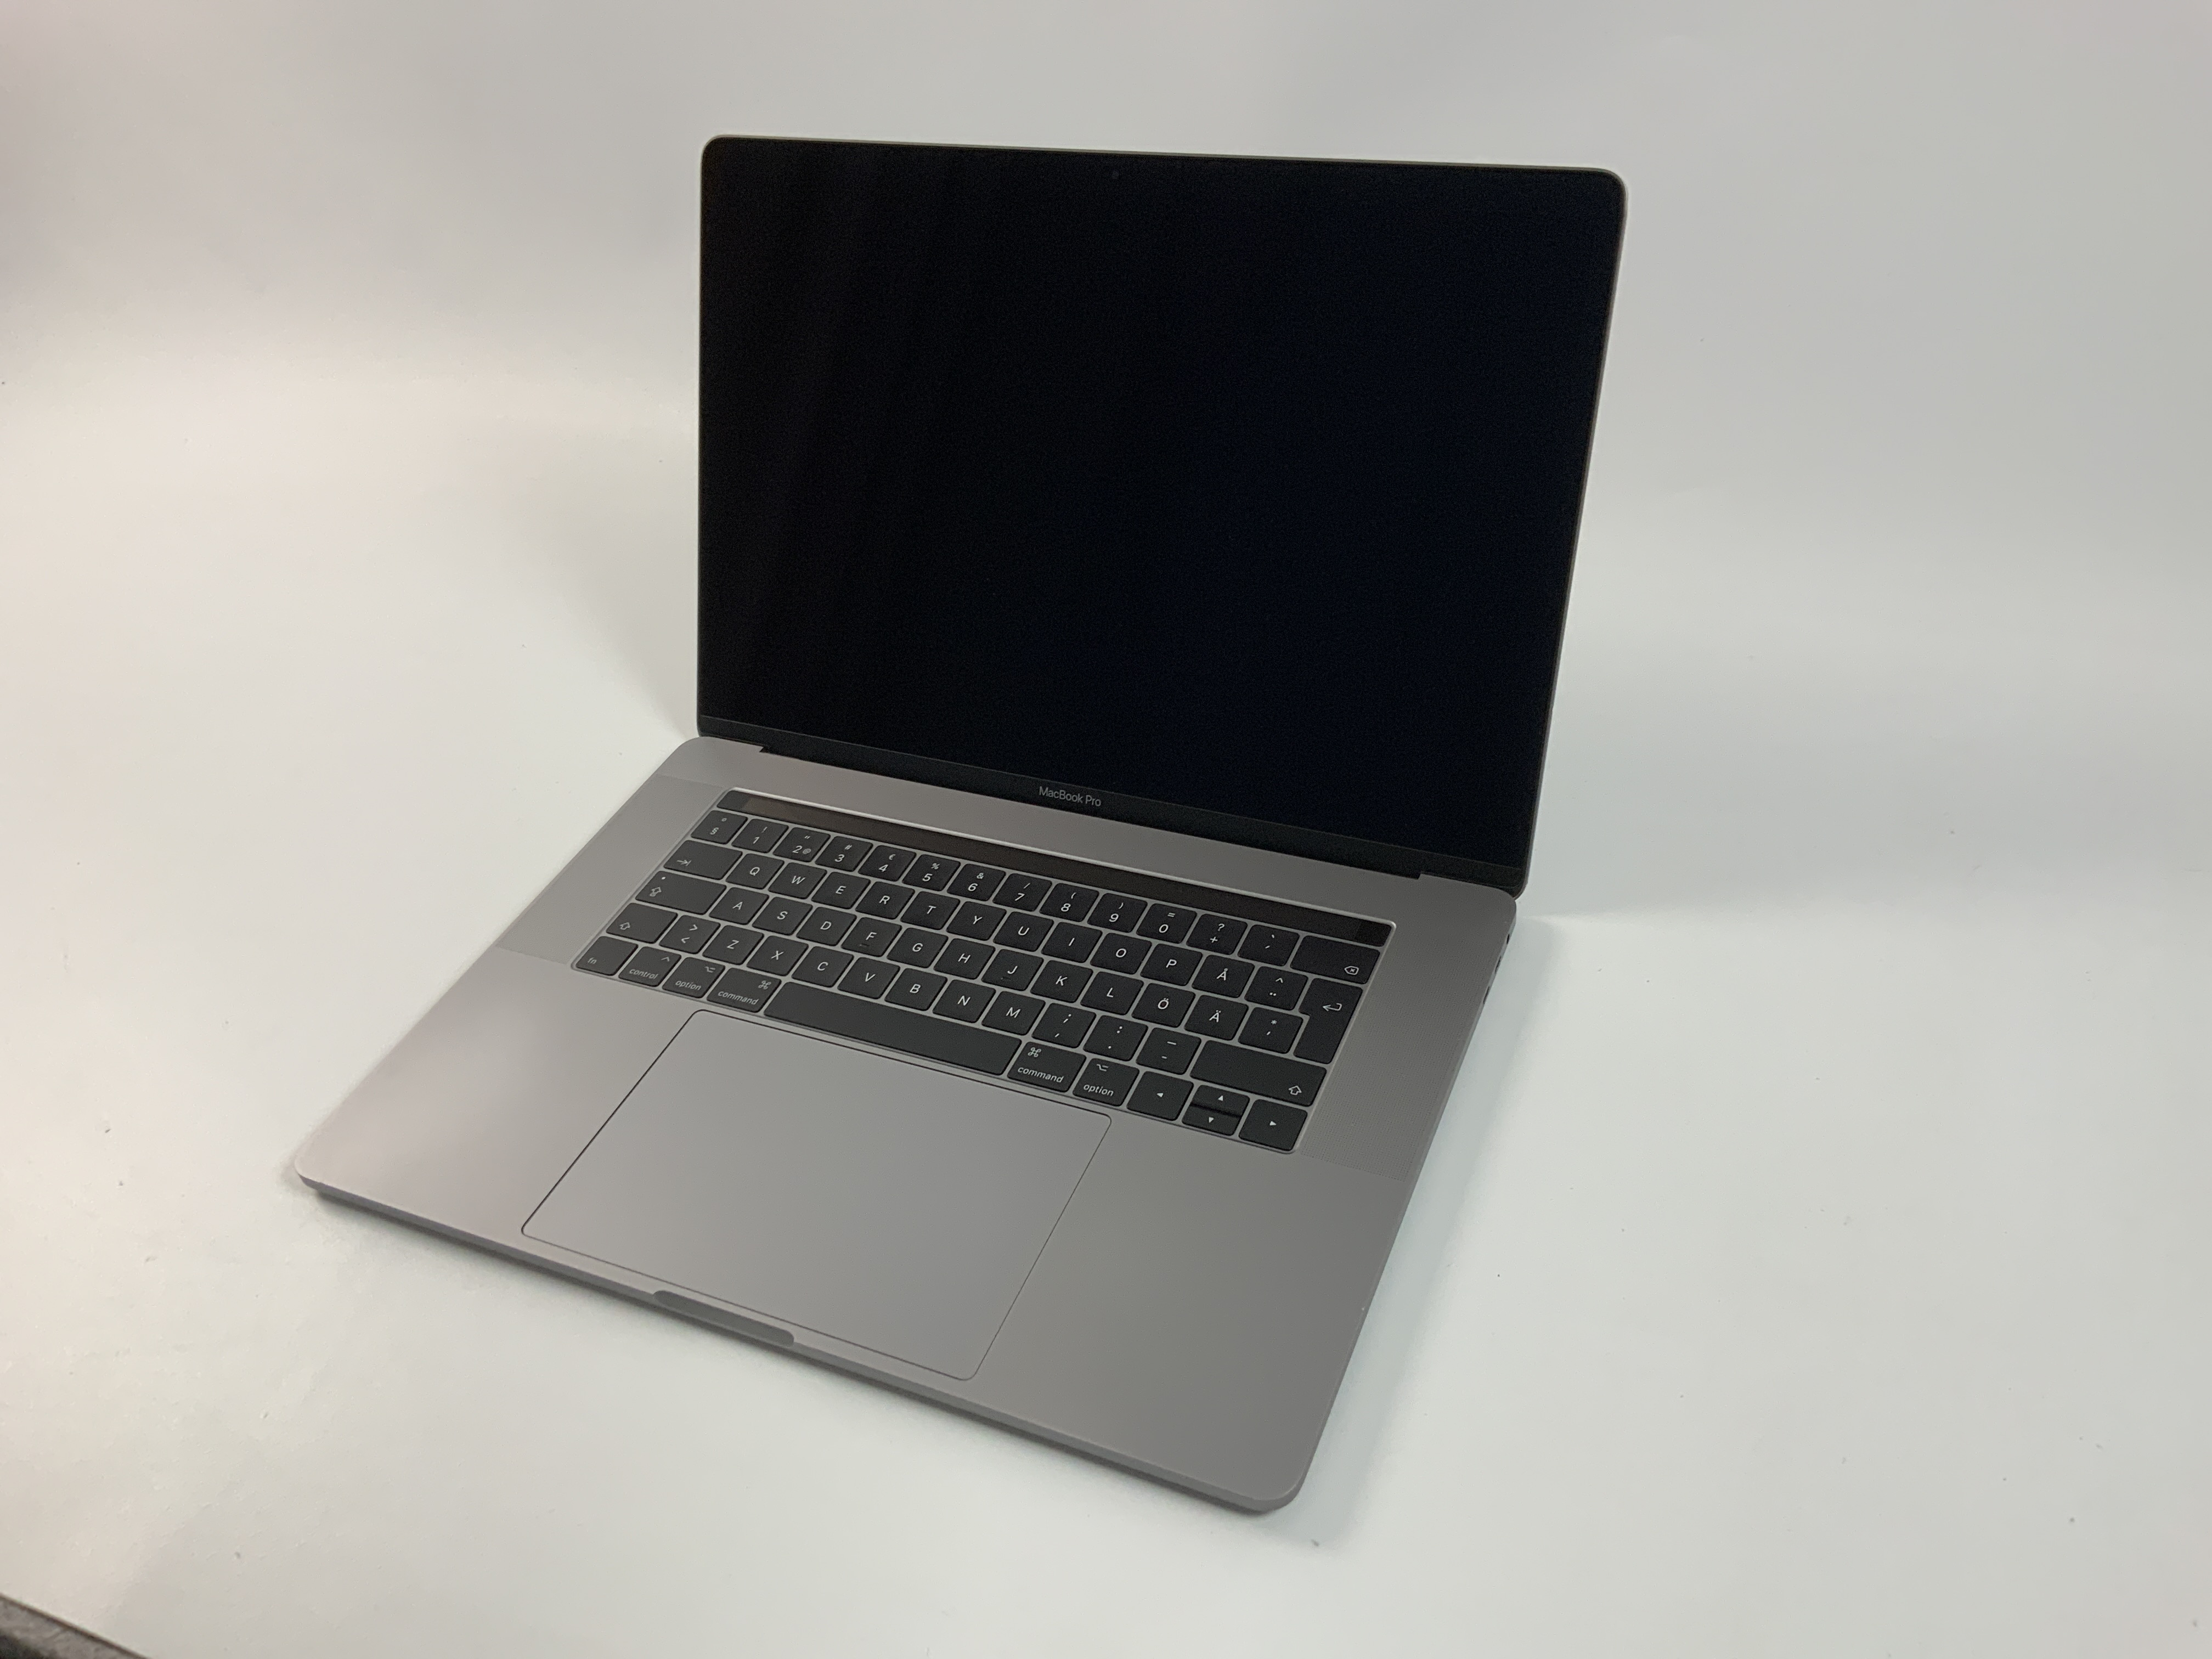 MacBook Pro 15" Touch Bar Late 2016 (Intel Quad-Core i7 2.6 GHz 16 GB RAM 256 GB SSD), Space Gray, Intel Quad-Core i7 2.6 GHz, 16 GB RAM, 256 GB SSD, Bild 1